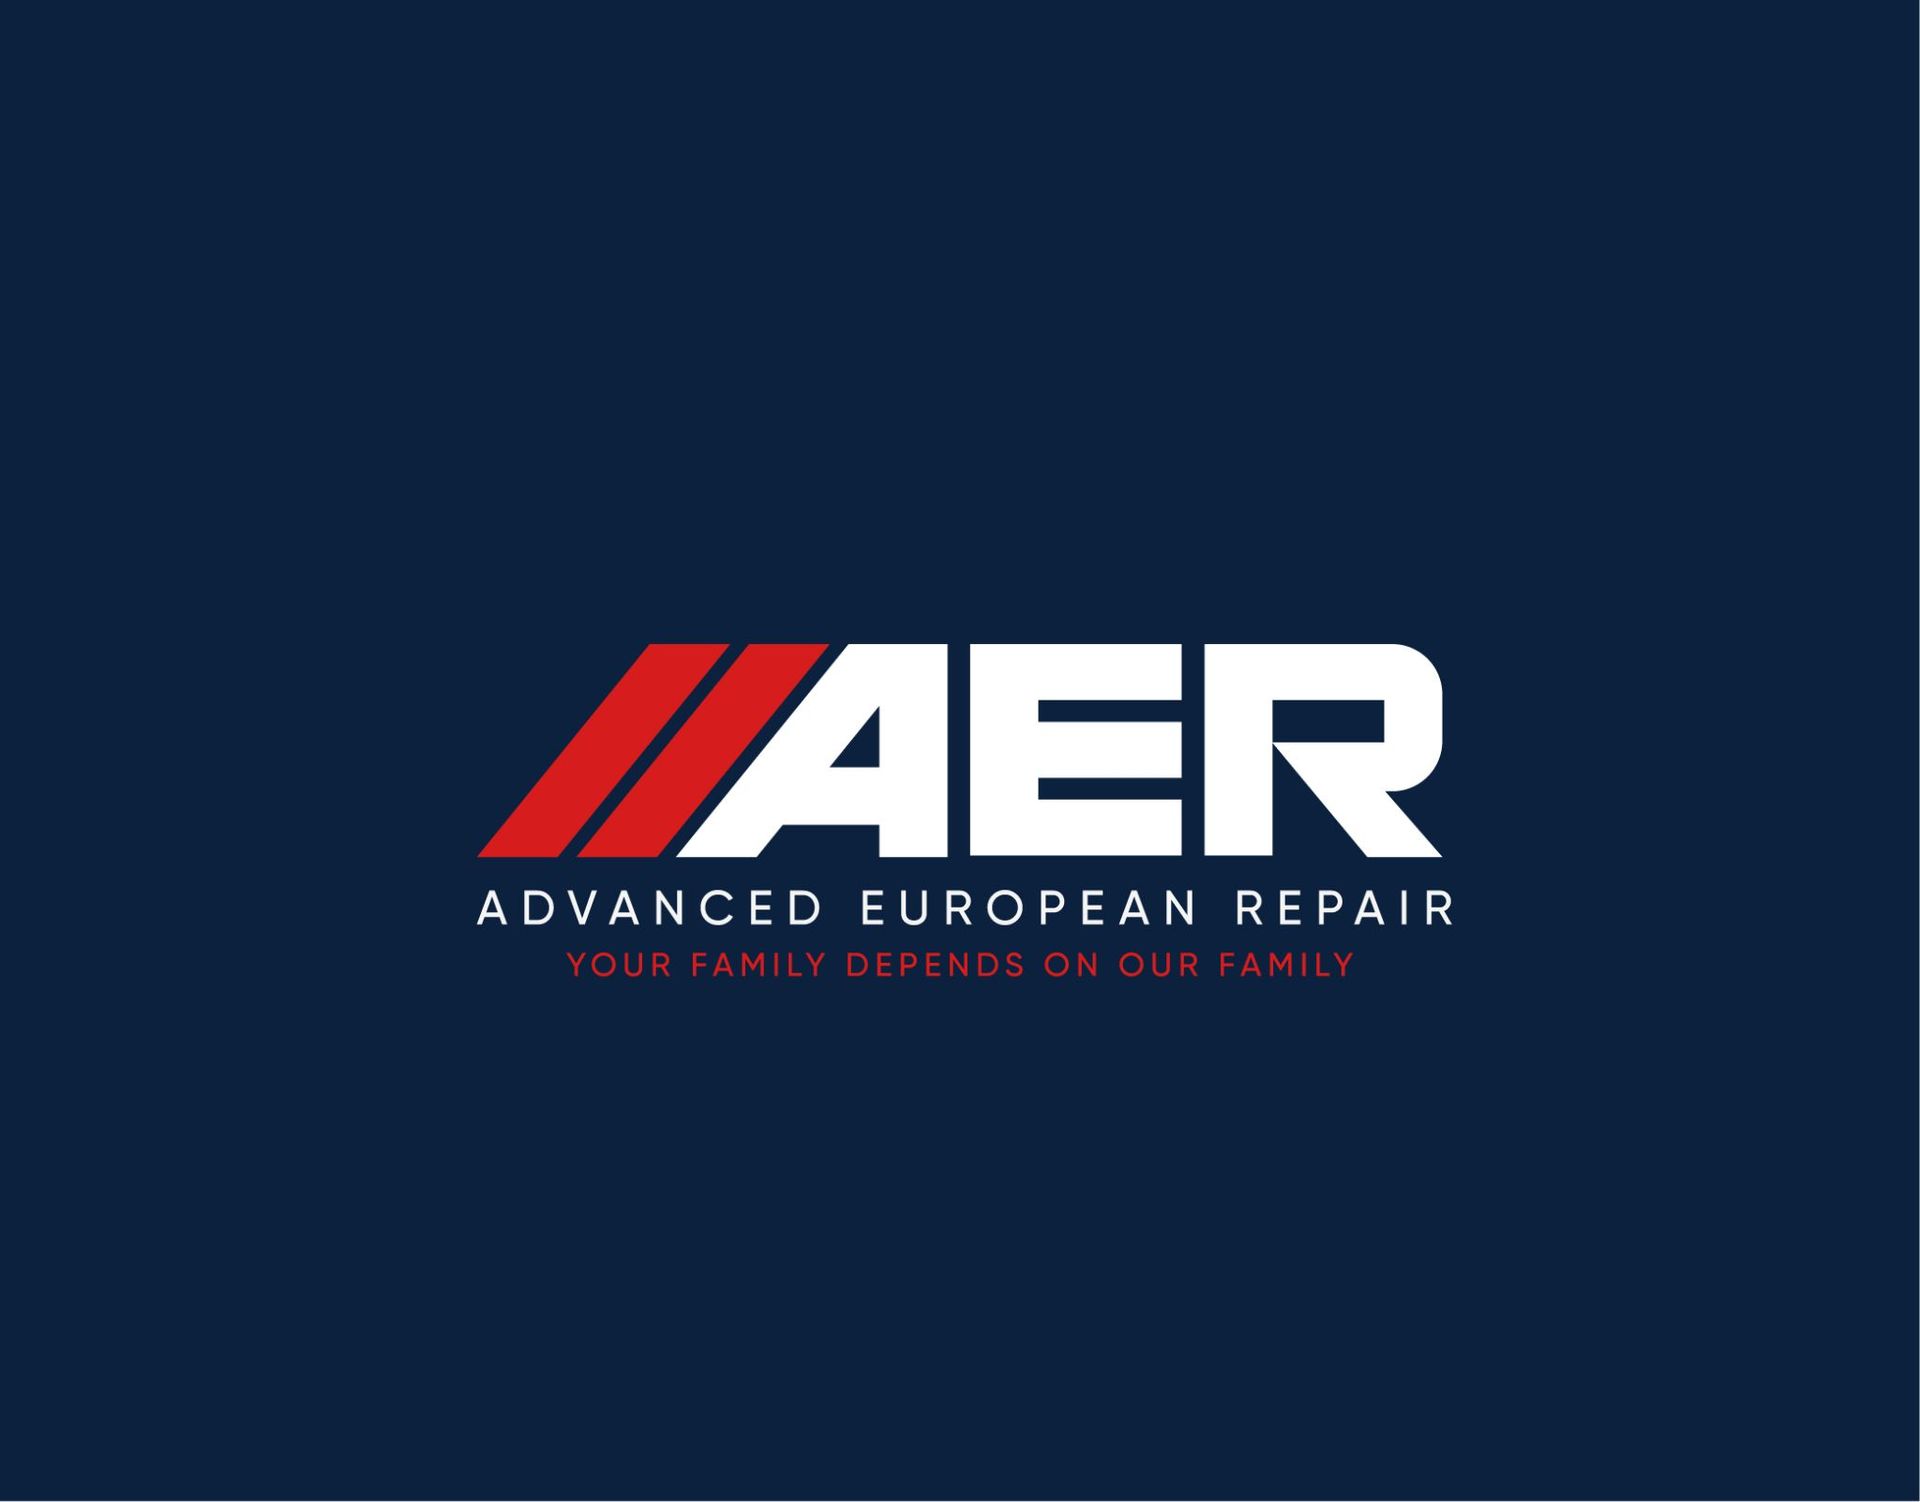 aer advanced european repair logo on a dark blue background